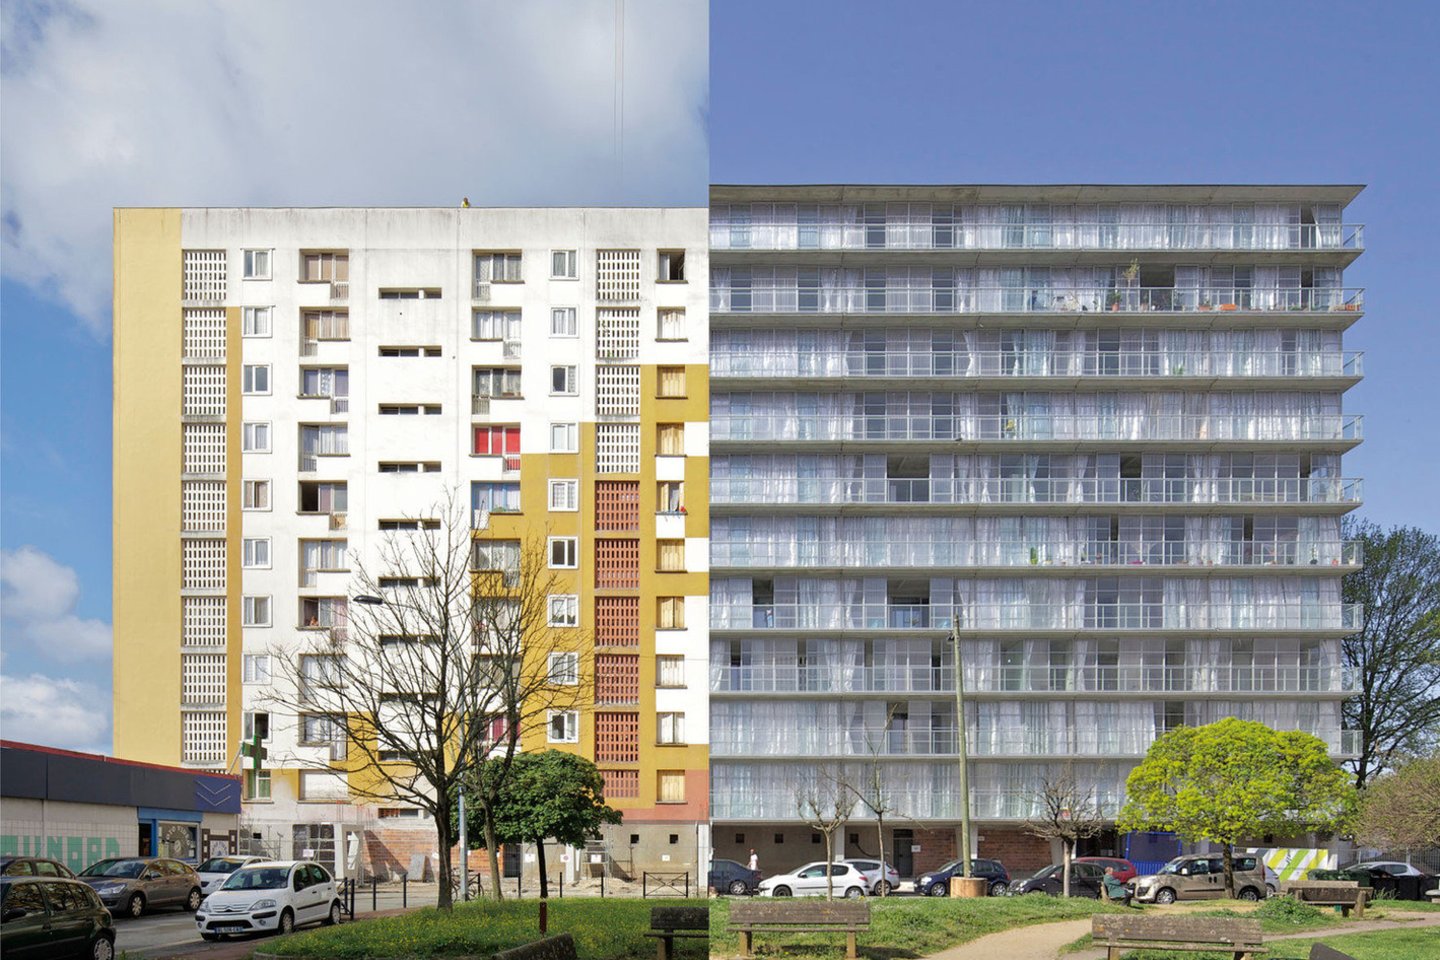 Inovatyvi trijų milžiniškų daugiabučių renovacija Bordo, Prancūzijoje, gerokai pakeitė pastatų erdvių ir gyvenimo kokybę.<br>Philippe Ruault / archdaily.com nuotr.